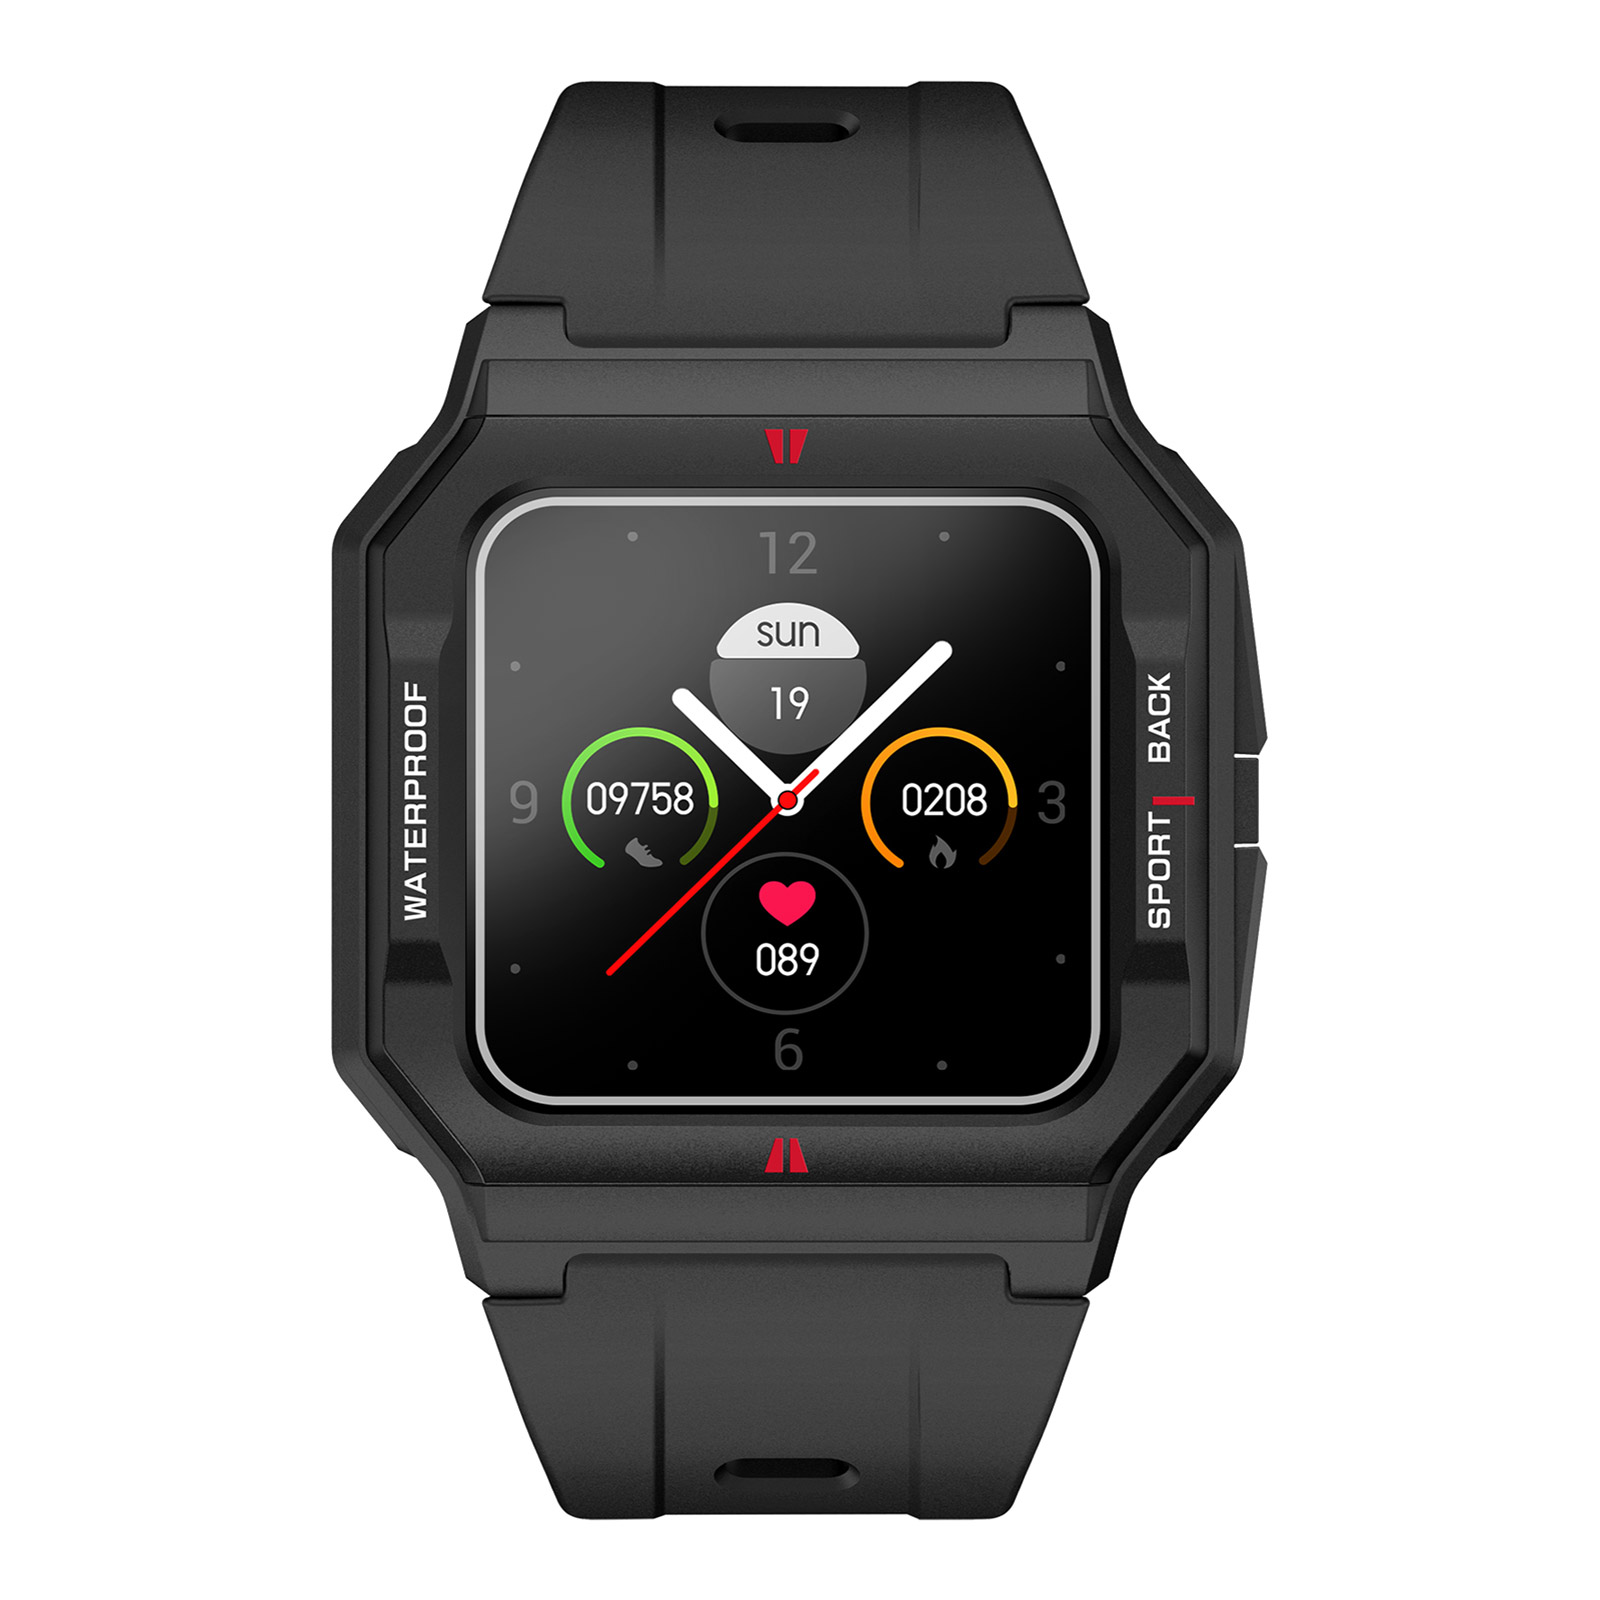 Nasa Smart Watch BNA30041-003 - svart